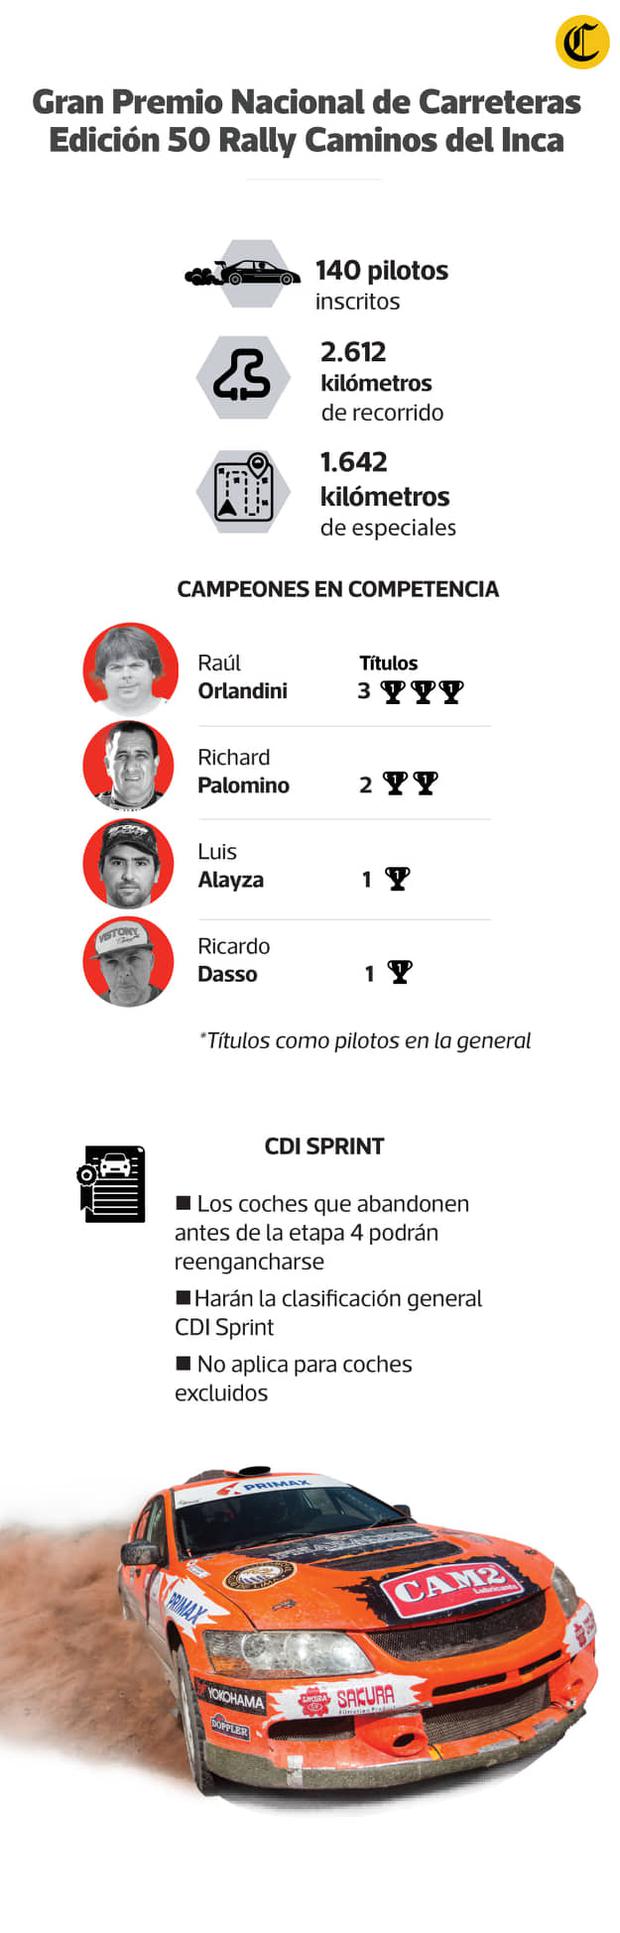 Infografía El Comercio.